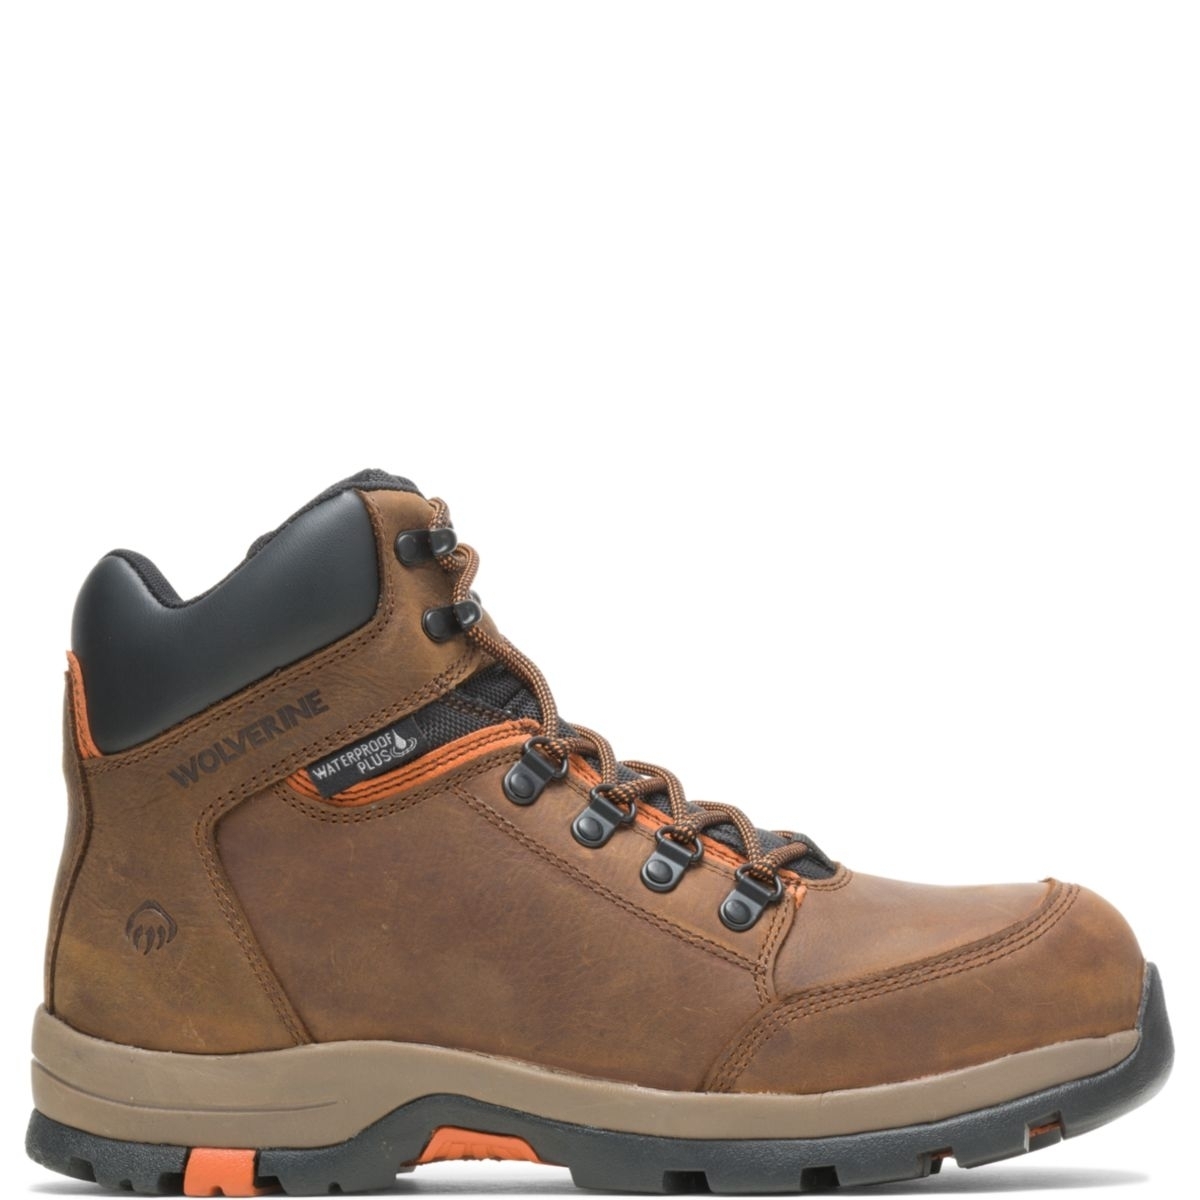 WOLVERINE Men's Grayson Steel Toe Waterproof Work Boot Brown - W211043 BROWN - BROWN, 8 X-Wide